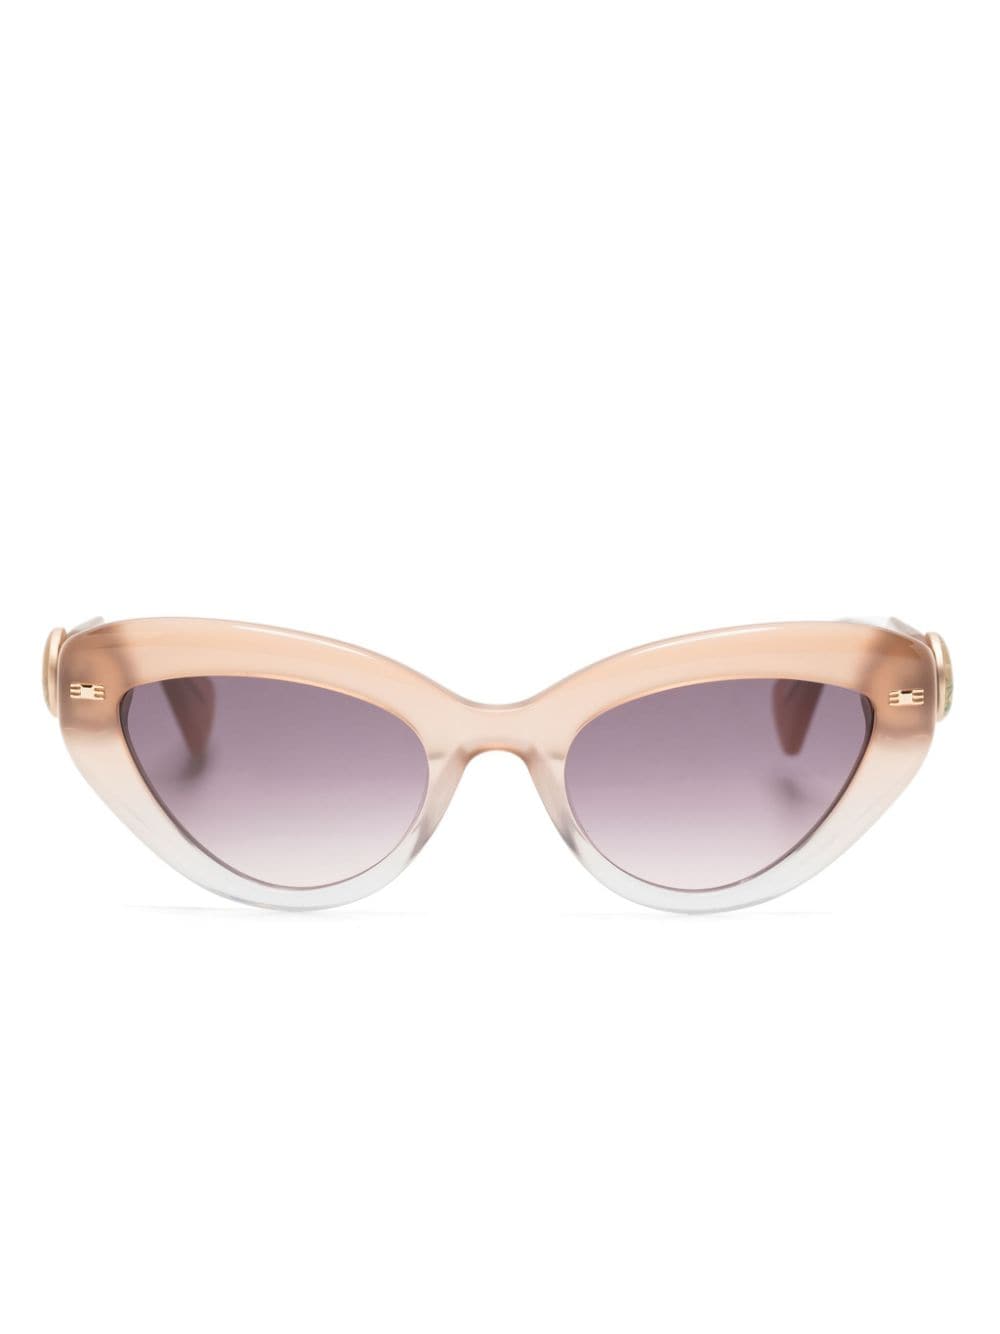 Vivienne Westwood gradient cat-eye sunglasses - Neutrals von Vivienne Westwood